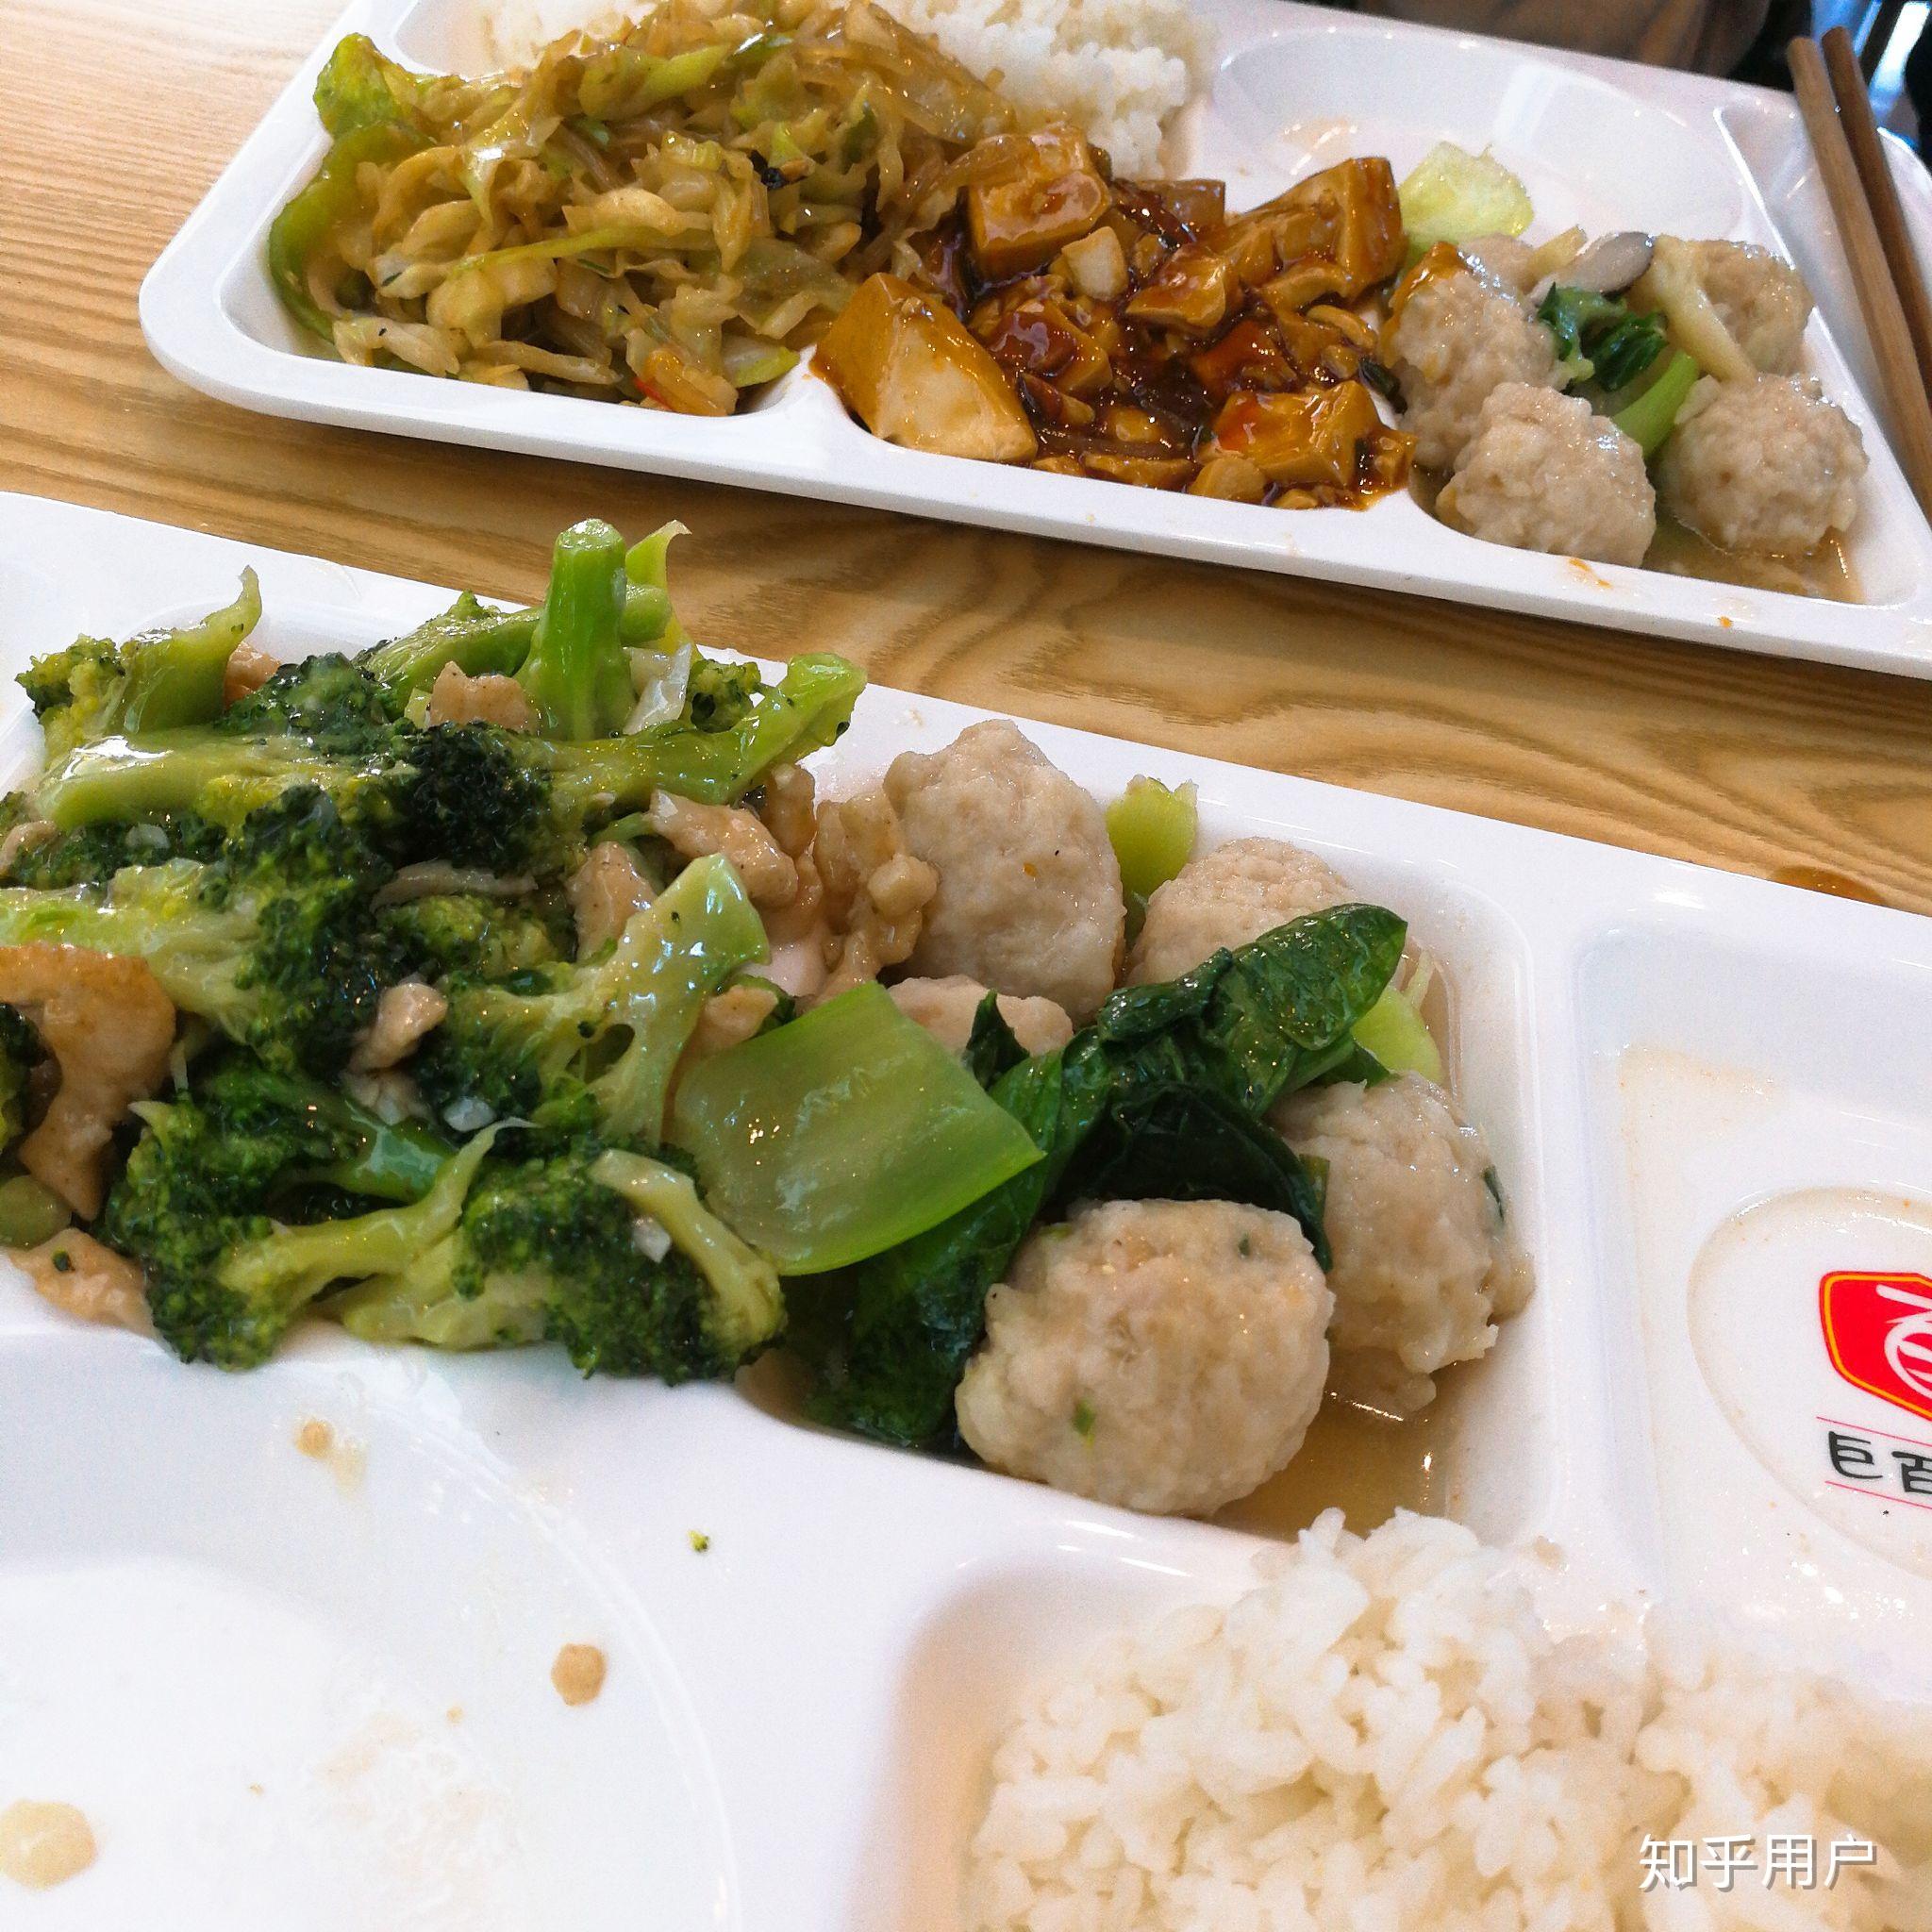 在江苏大学里就餐是一种怎样的体验?有什么推荐的食堂和美食? 